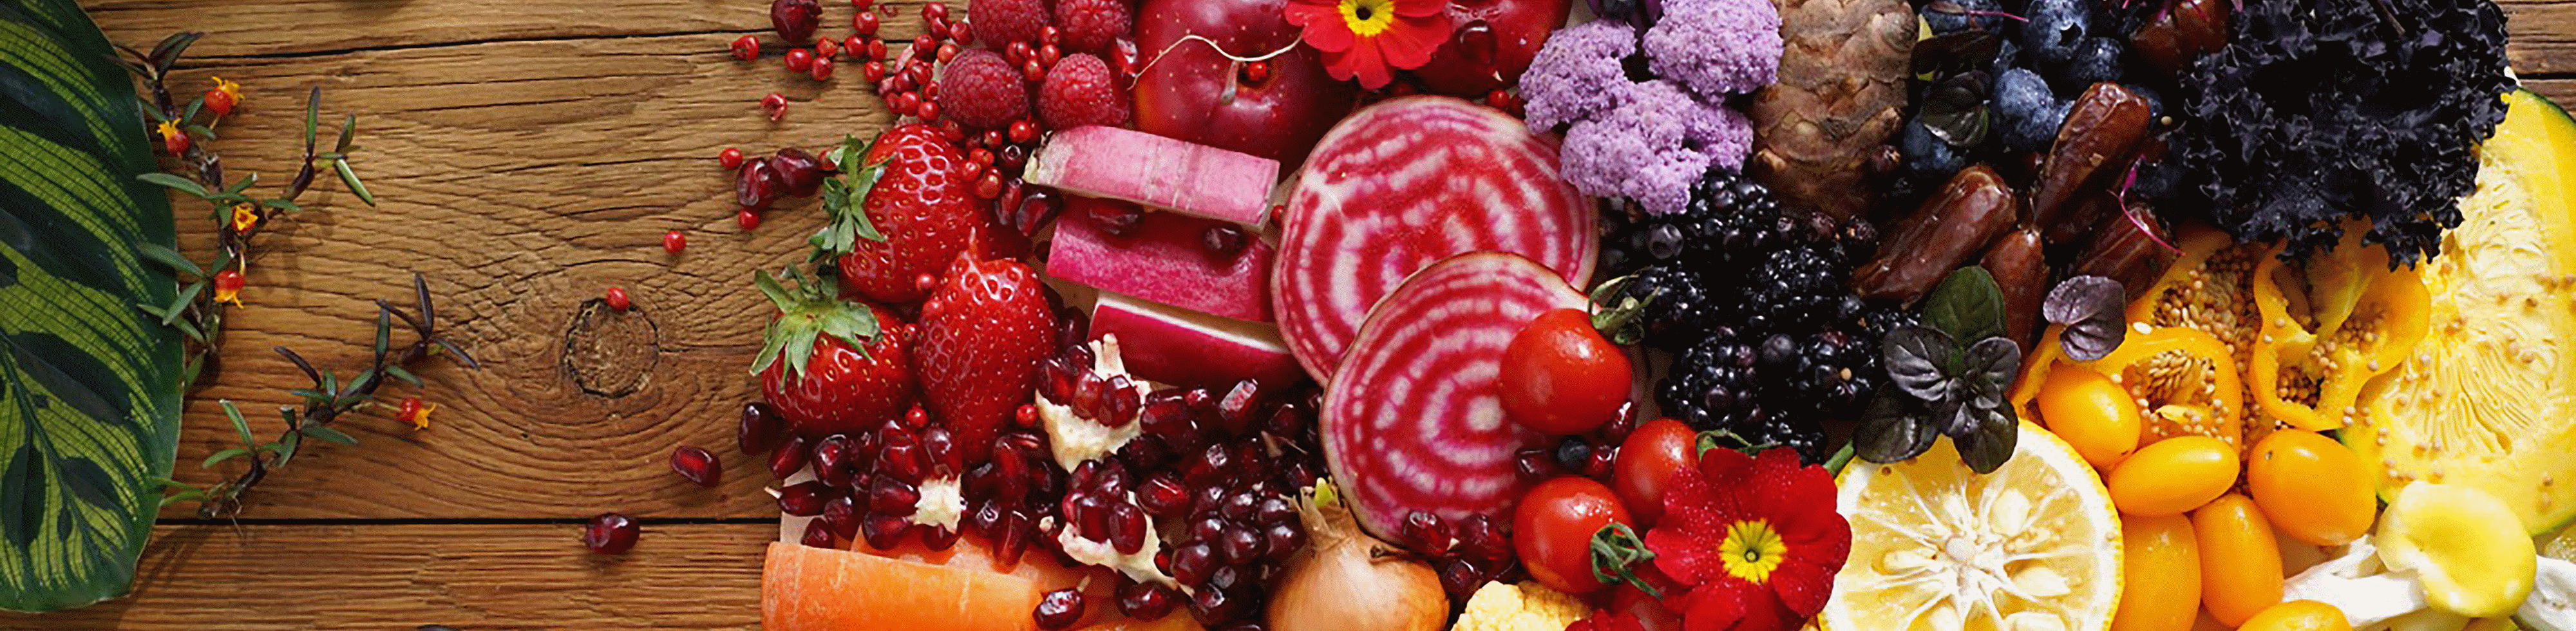 Εικόνα πολύχρωμων λαχανικών και φρούτων, τραβηγμένη με αυτόν τον φακό, με υψηλή ανάλυση σε κάθε γωνία.